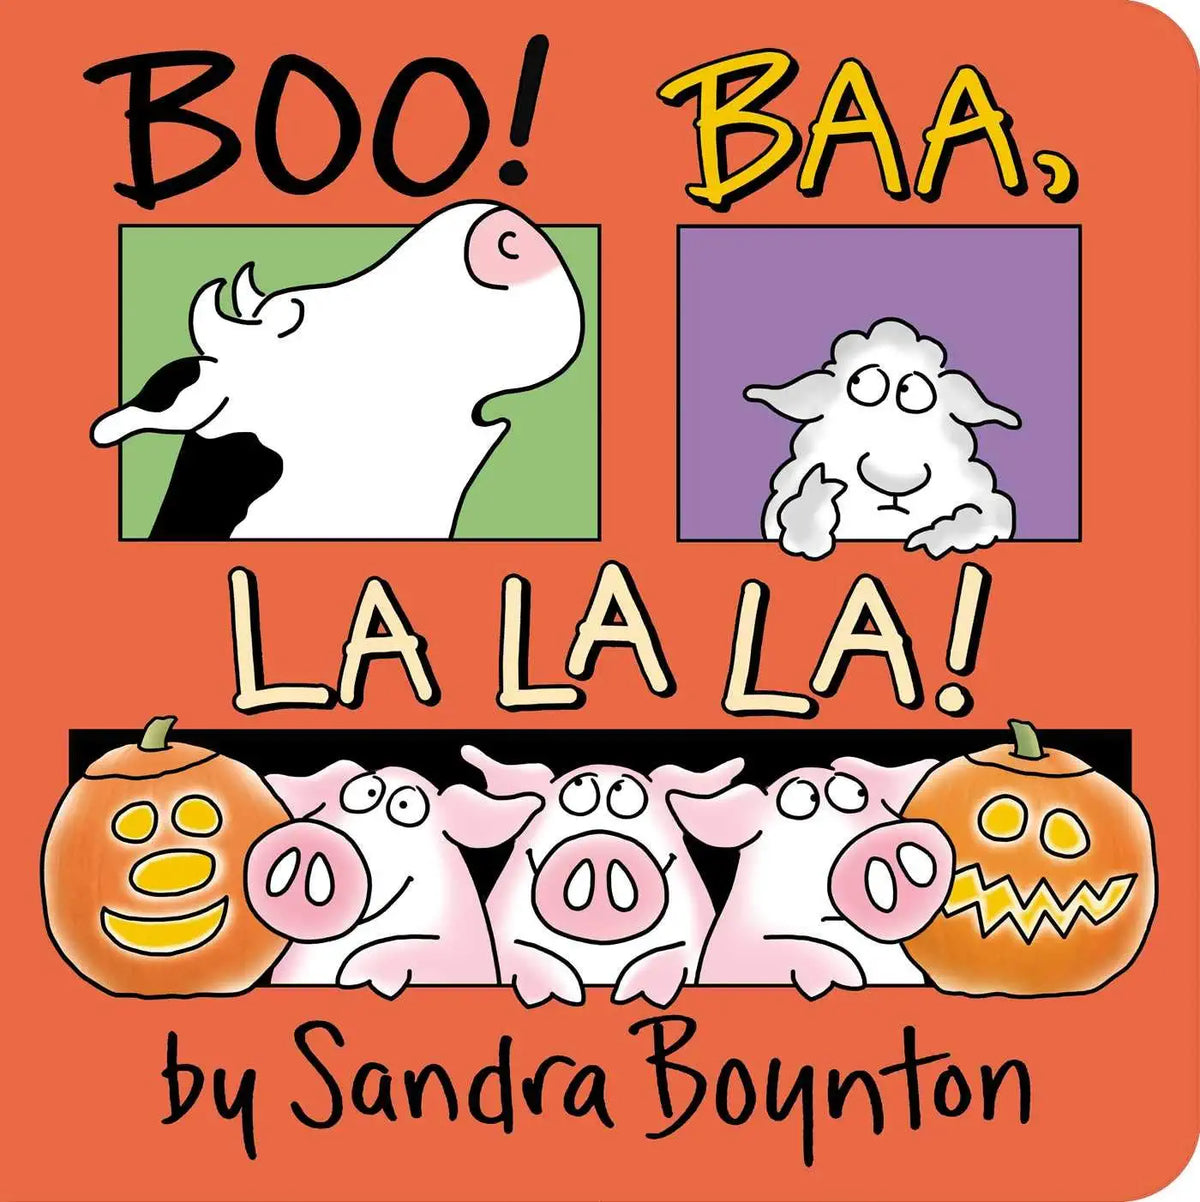 Boo Baa La La La by Sandra Boynton